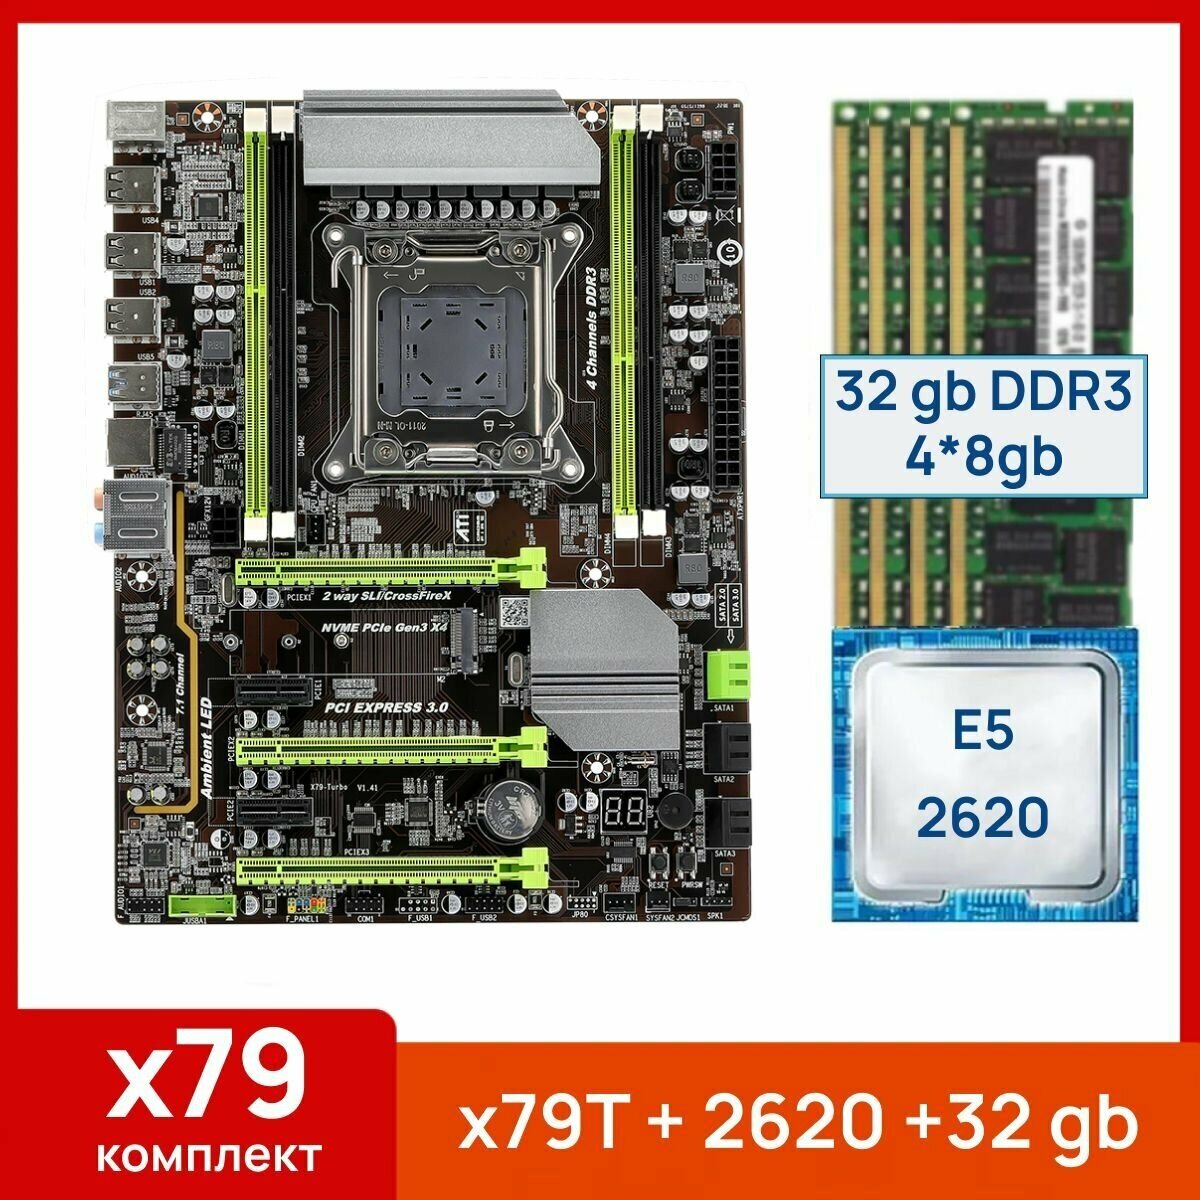 Комплект: Atermiter x79-Turbo + Xeon E5 2620 + 32 gb(4x8gb) DDR3 ecc reg